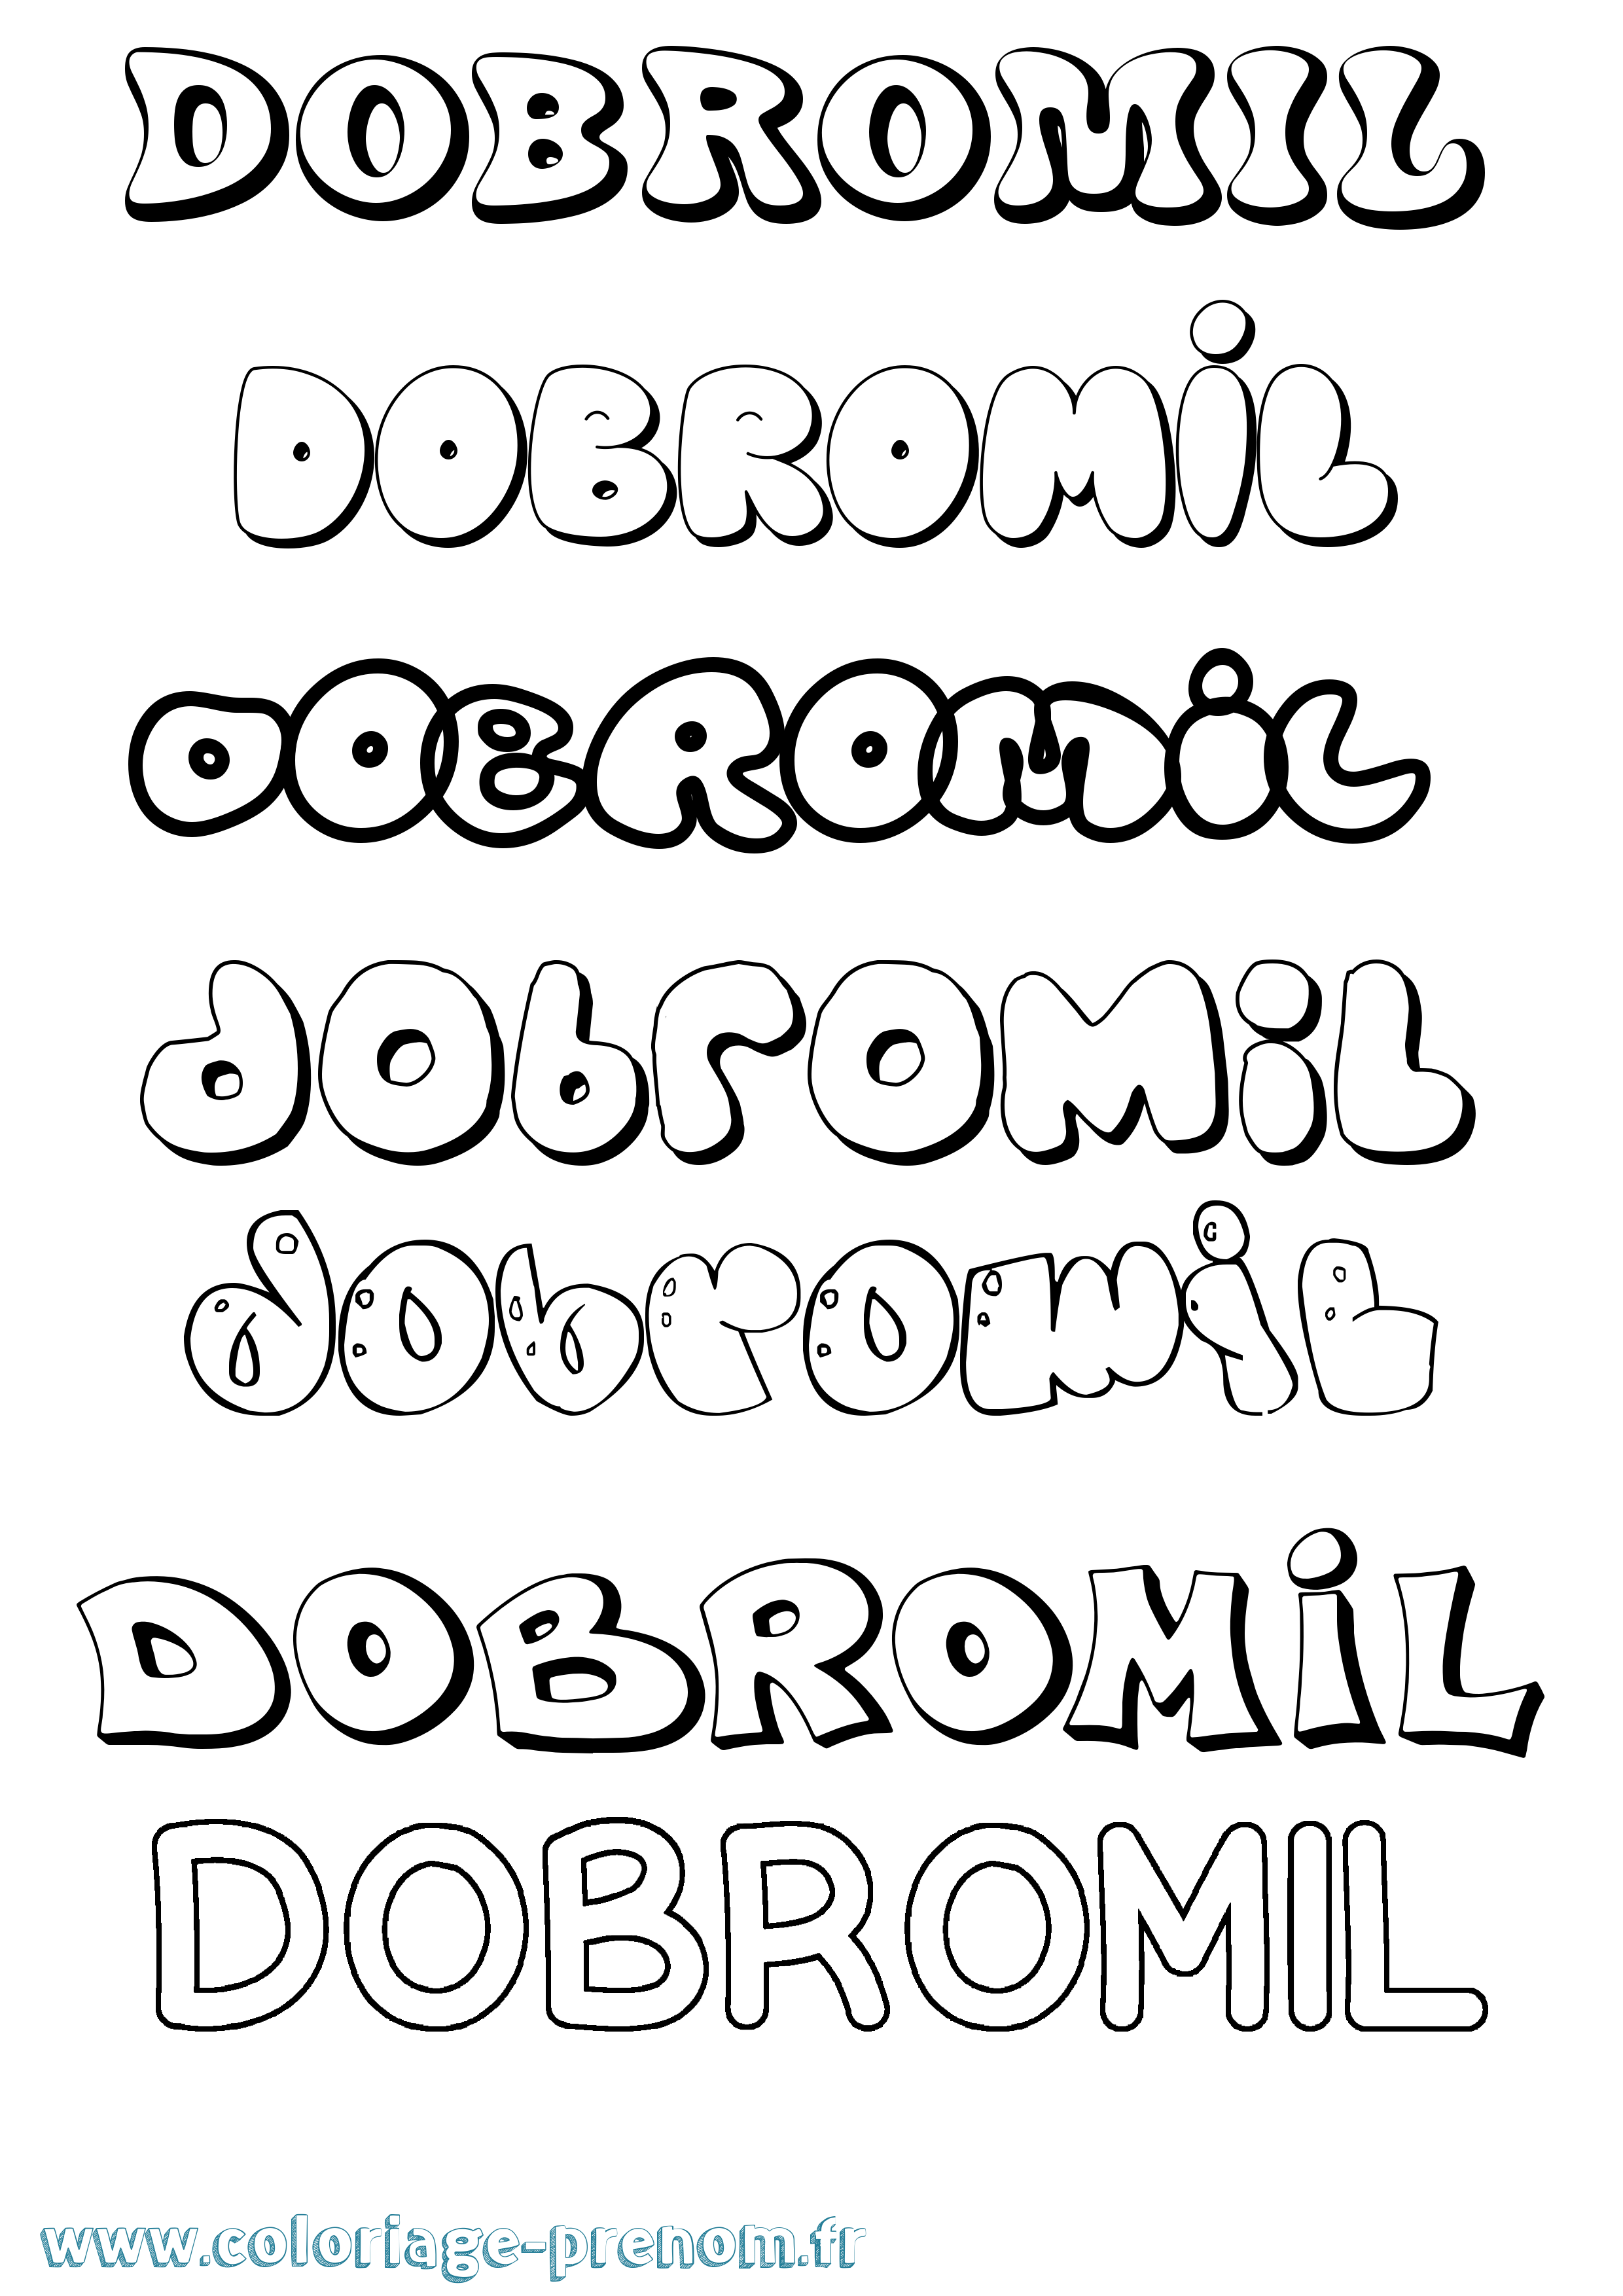 Coloriage prénom Dobromil Bubble